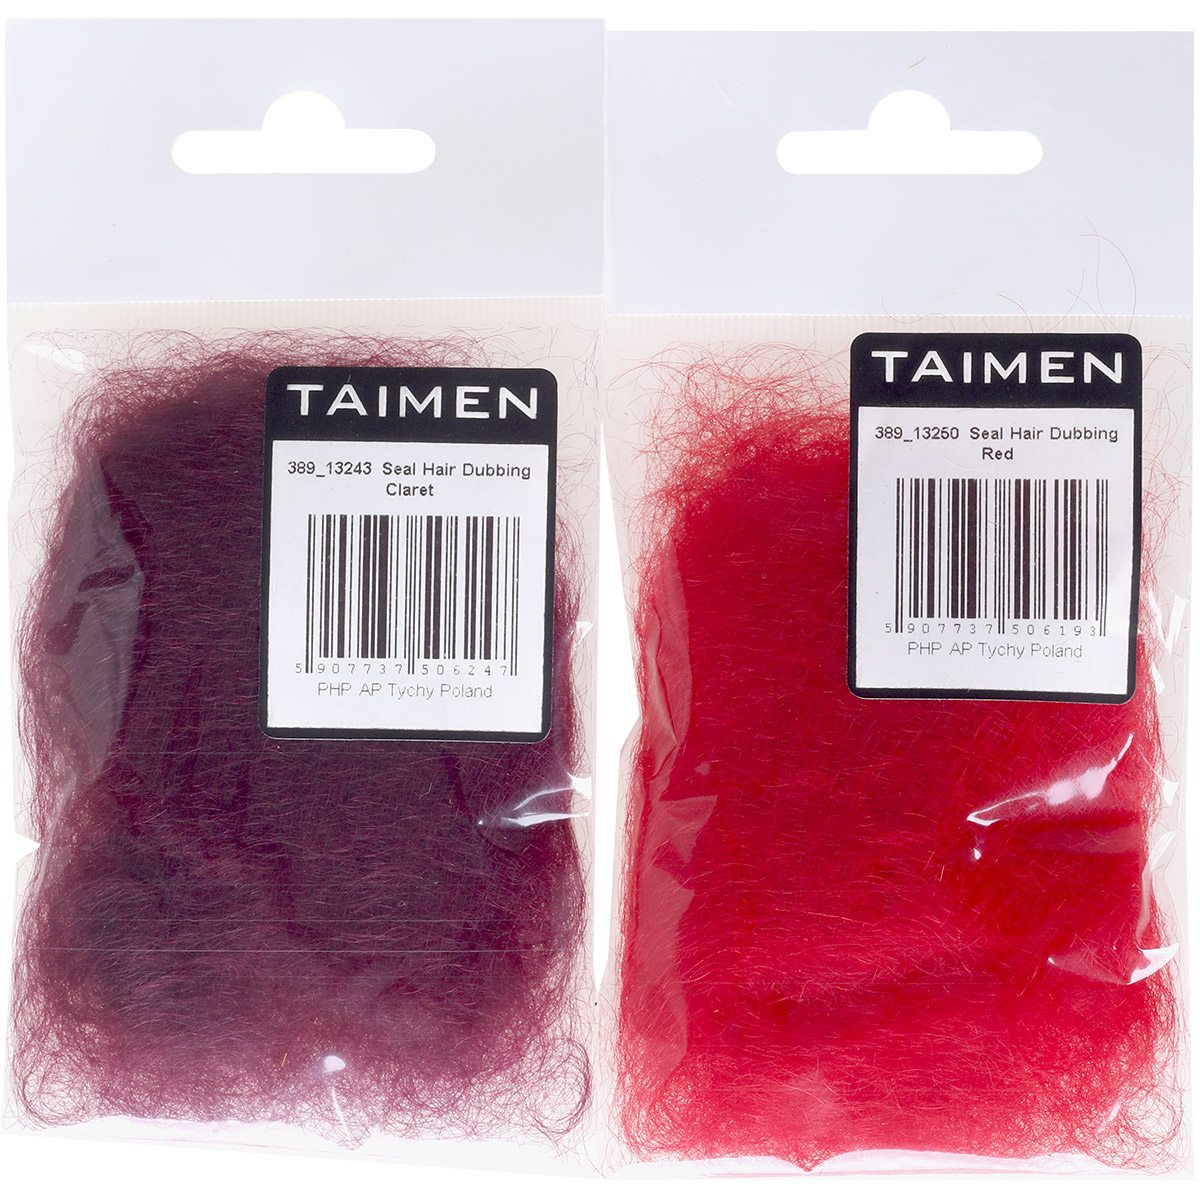 Taimen Seal Hair Dubbing (sub)